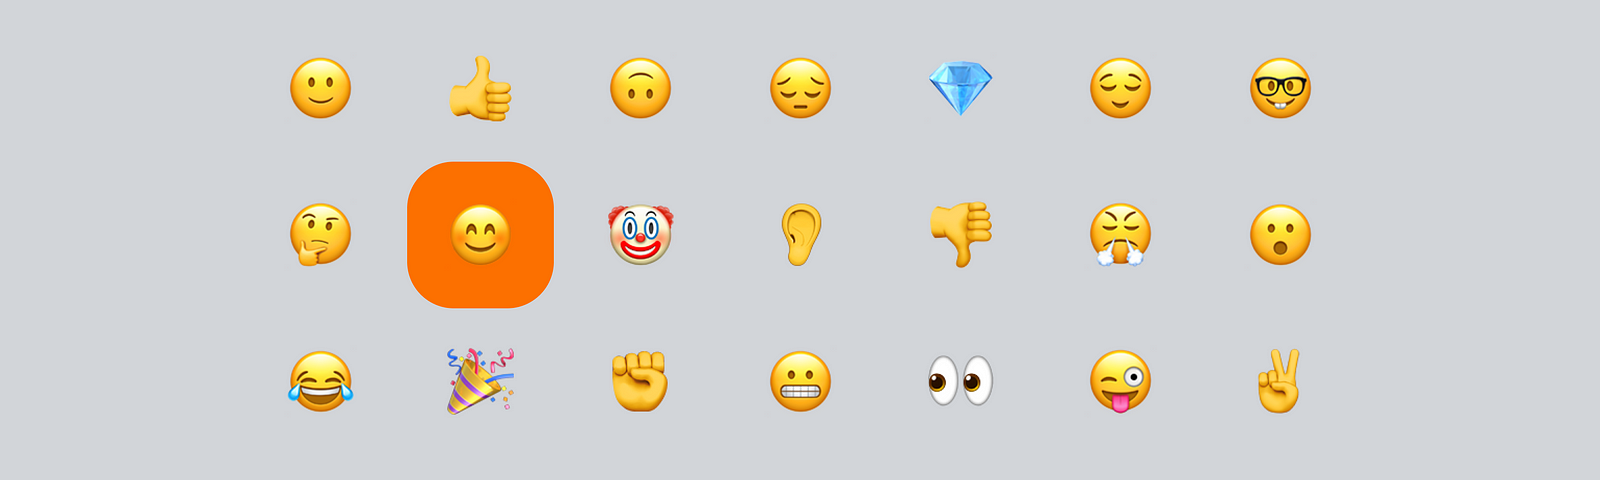 Mosaico com vários emojis demonstrando uma camada de muitos contextos e emoções, como: surpresa, felicidade, raiva, surpresa, tristeza e alívio.